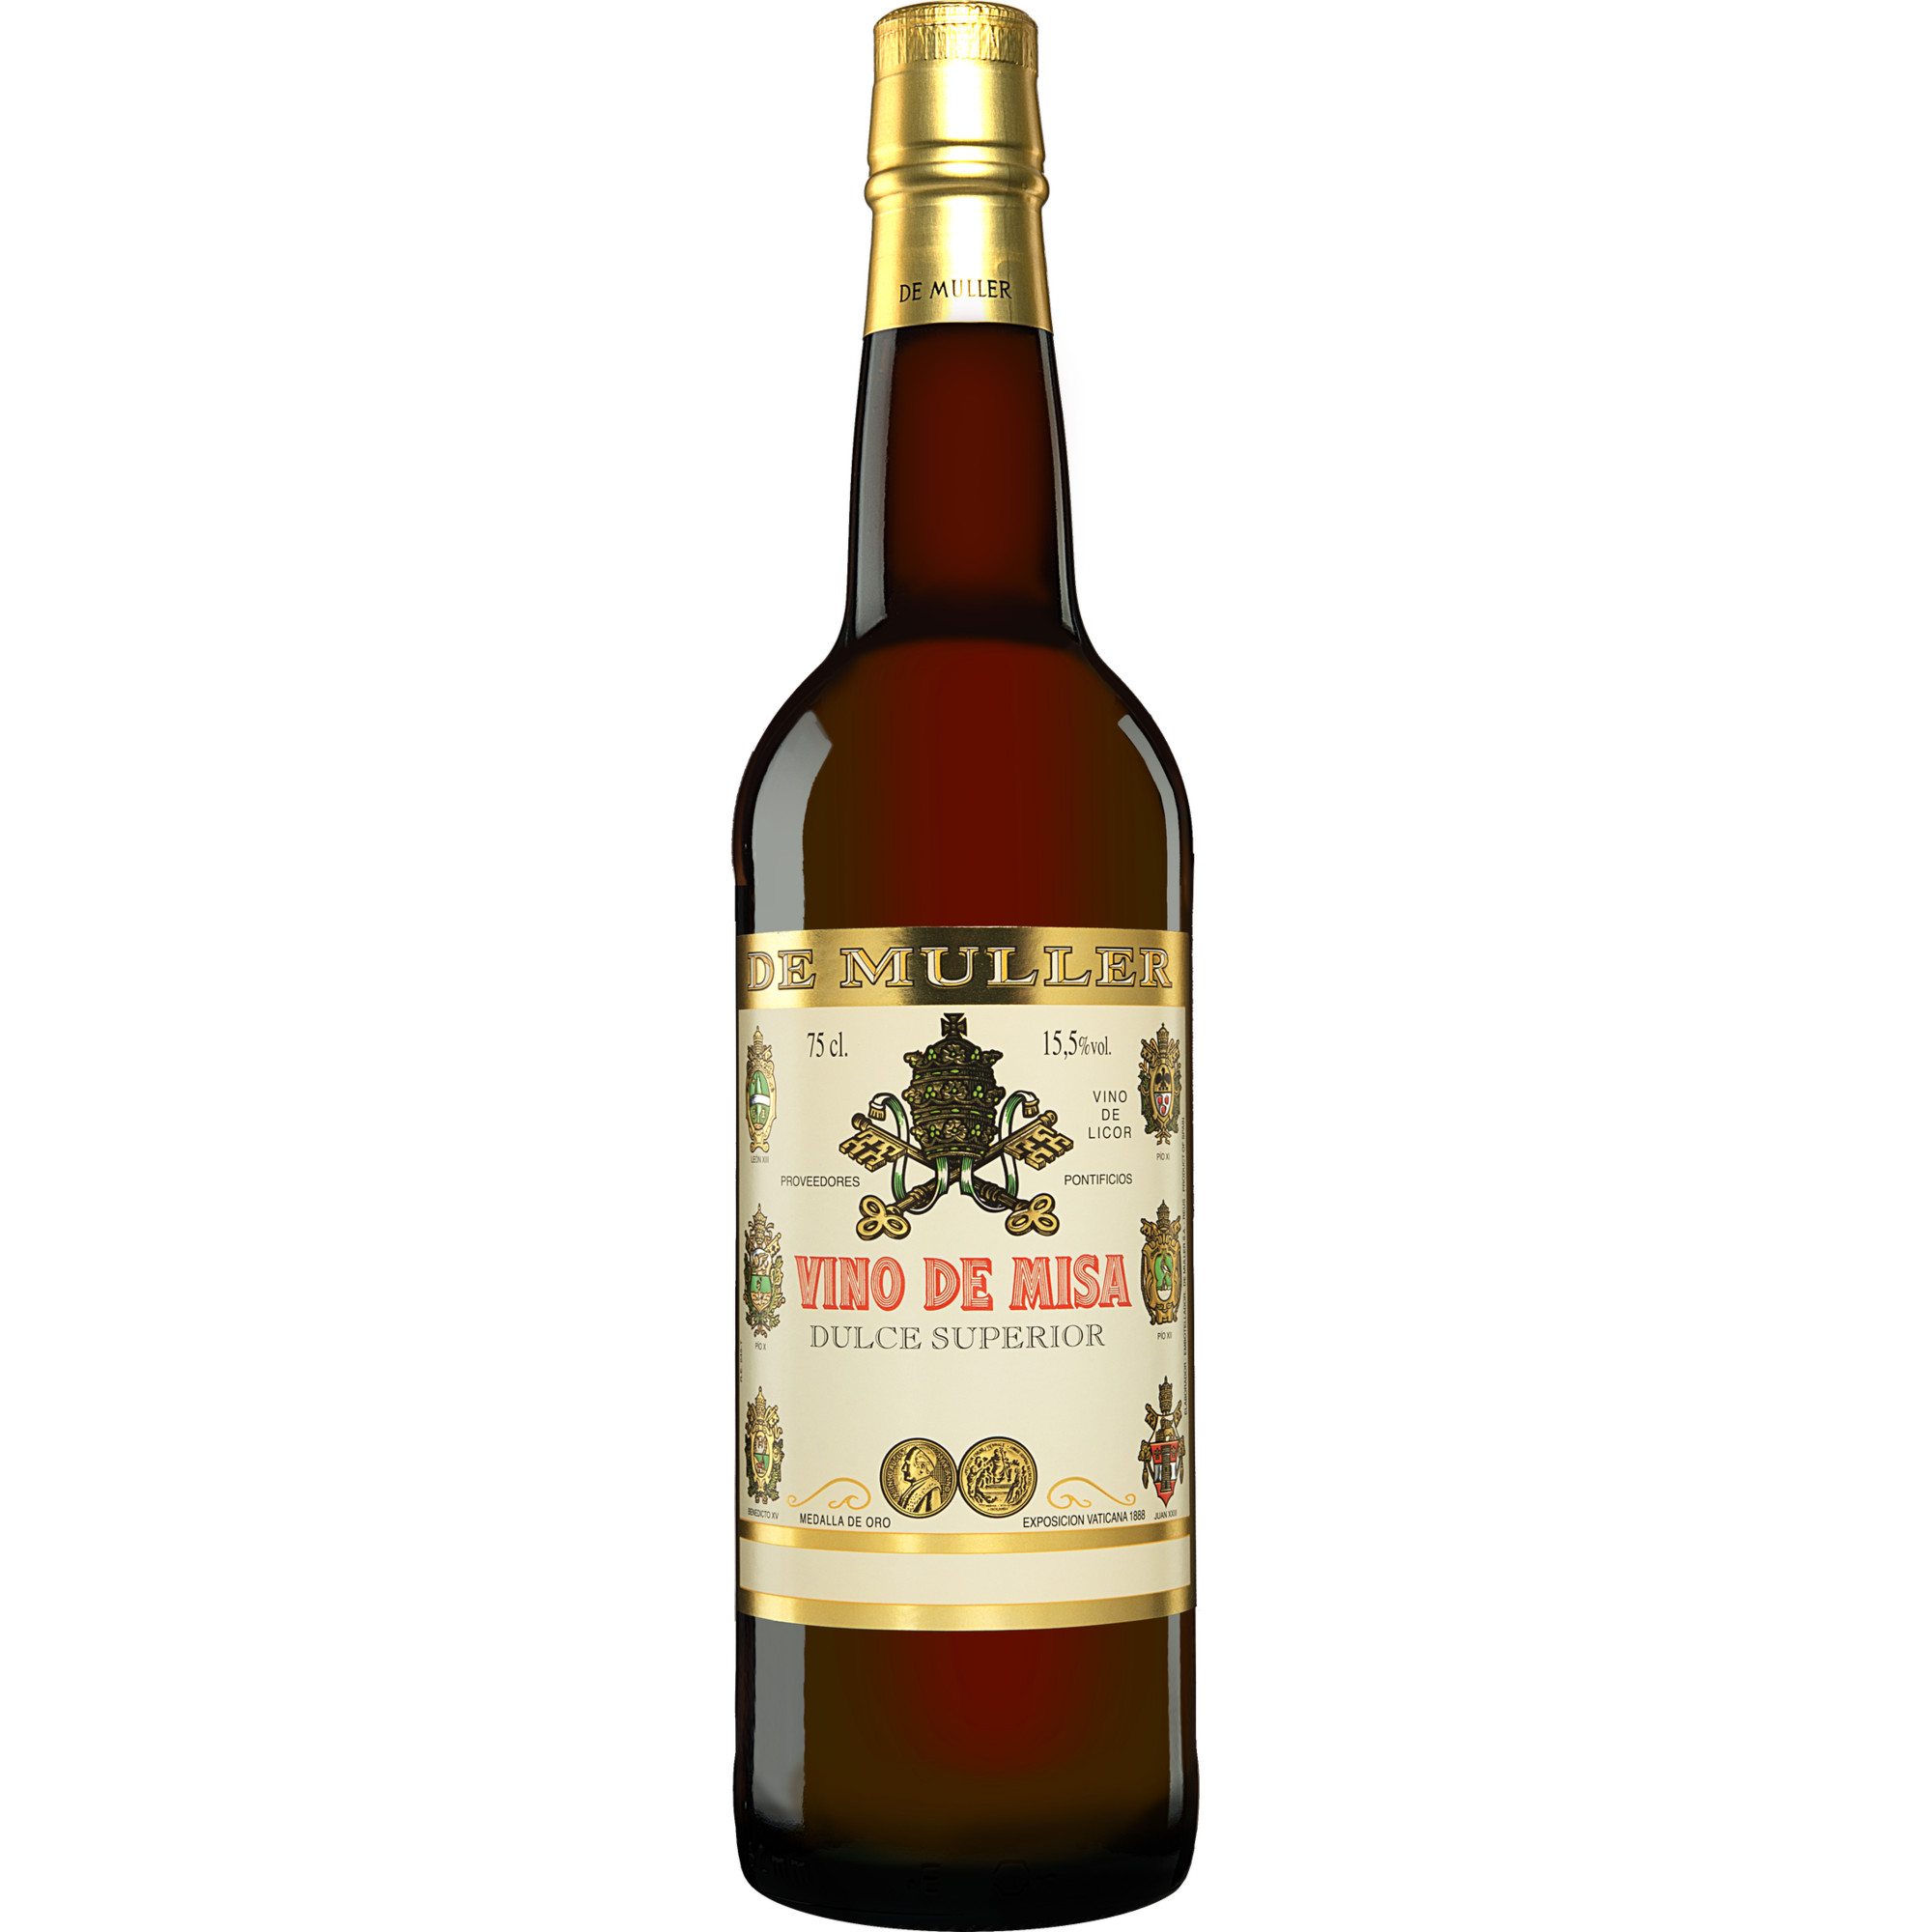 De Muller »Vino de Misa« Dulce Superior  0.75L 15.5% Vol. aus Spanien